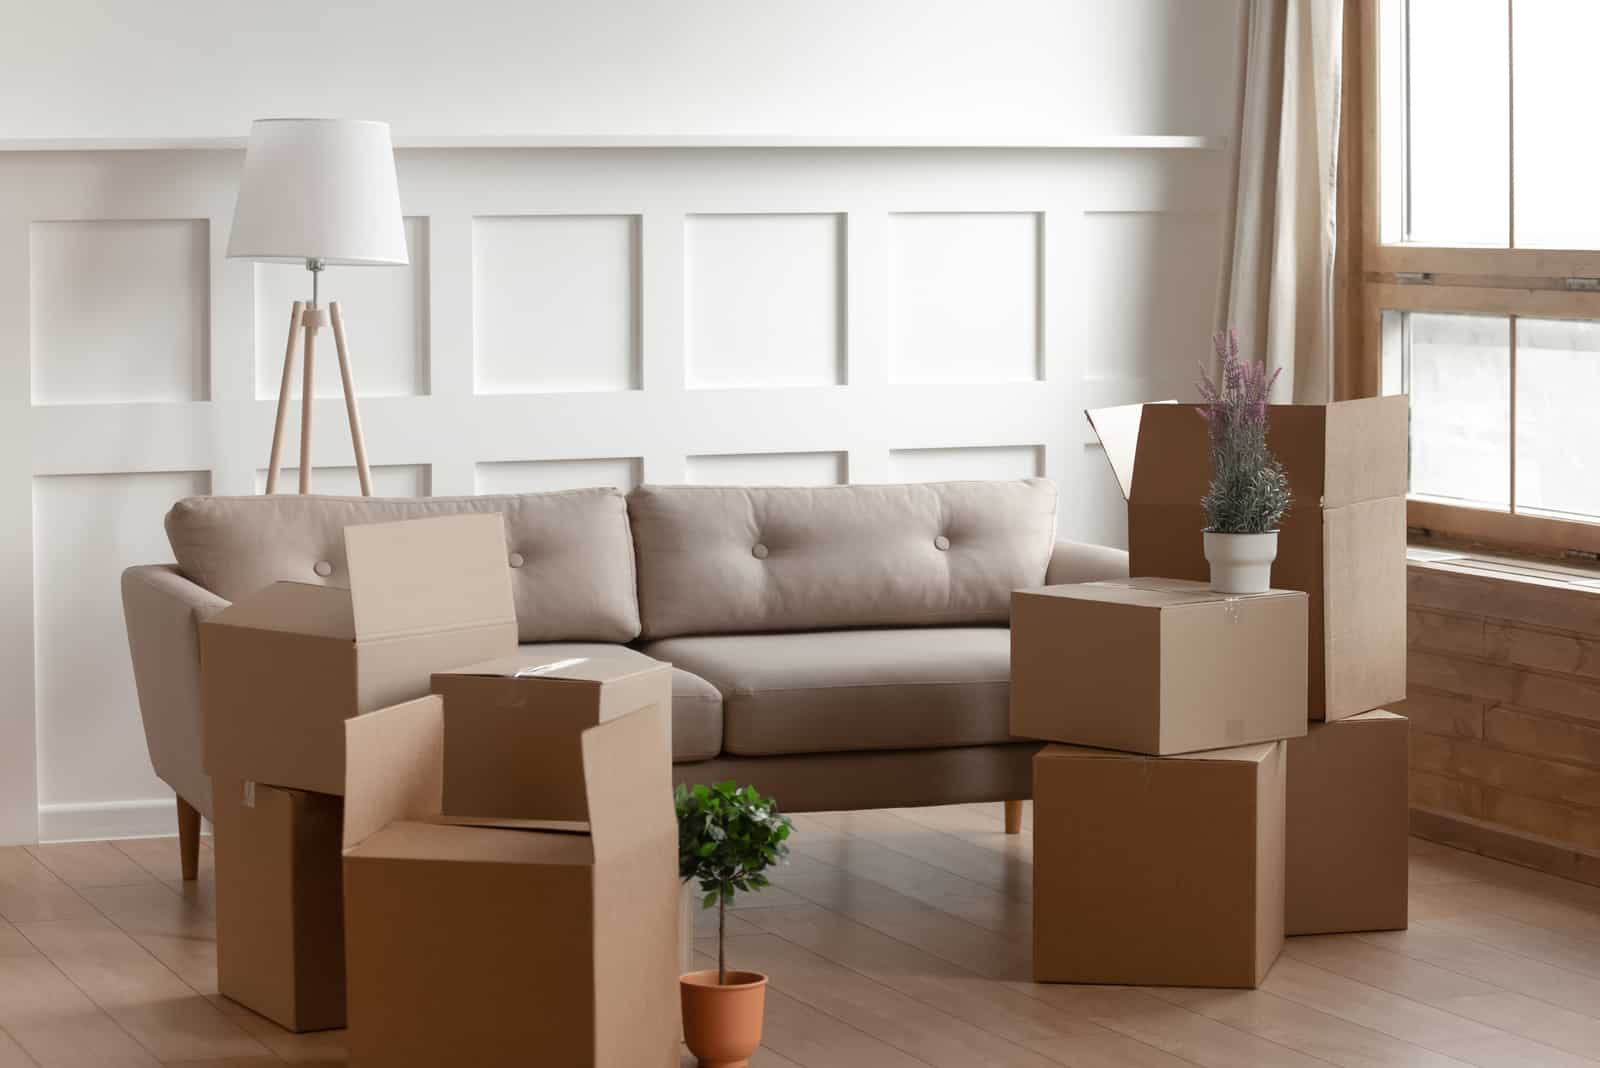 Grandi scatole di cartone, fiori domestici, piante in vaso, lampada da terra e comodo divano all'interno di un soggiorno moderno, senza persone.